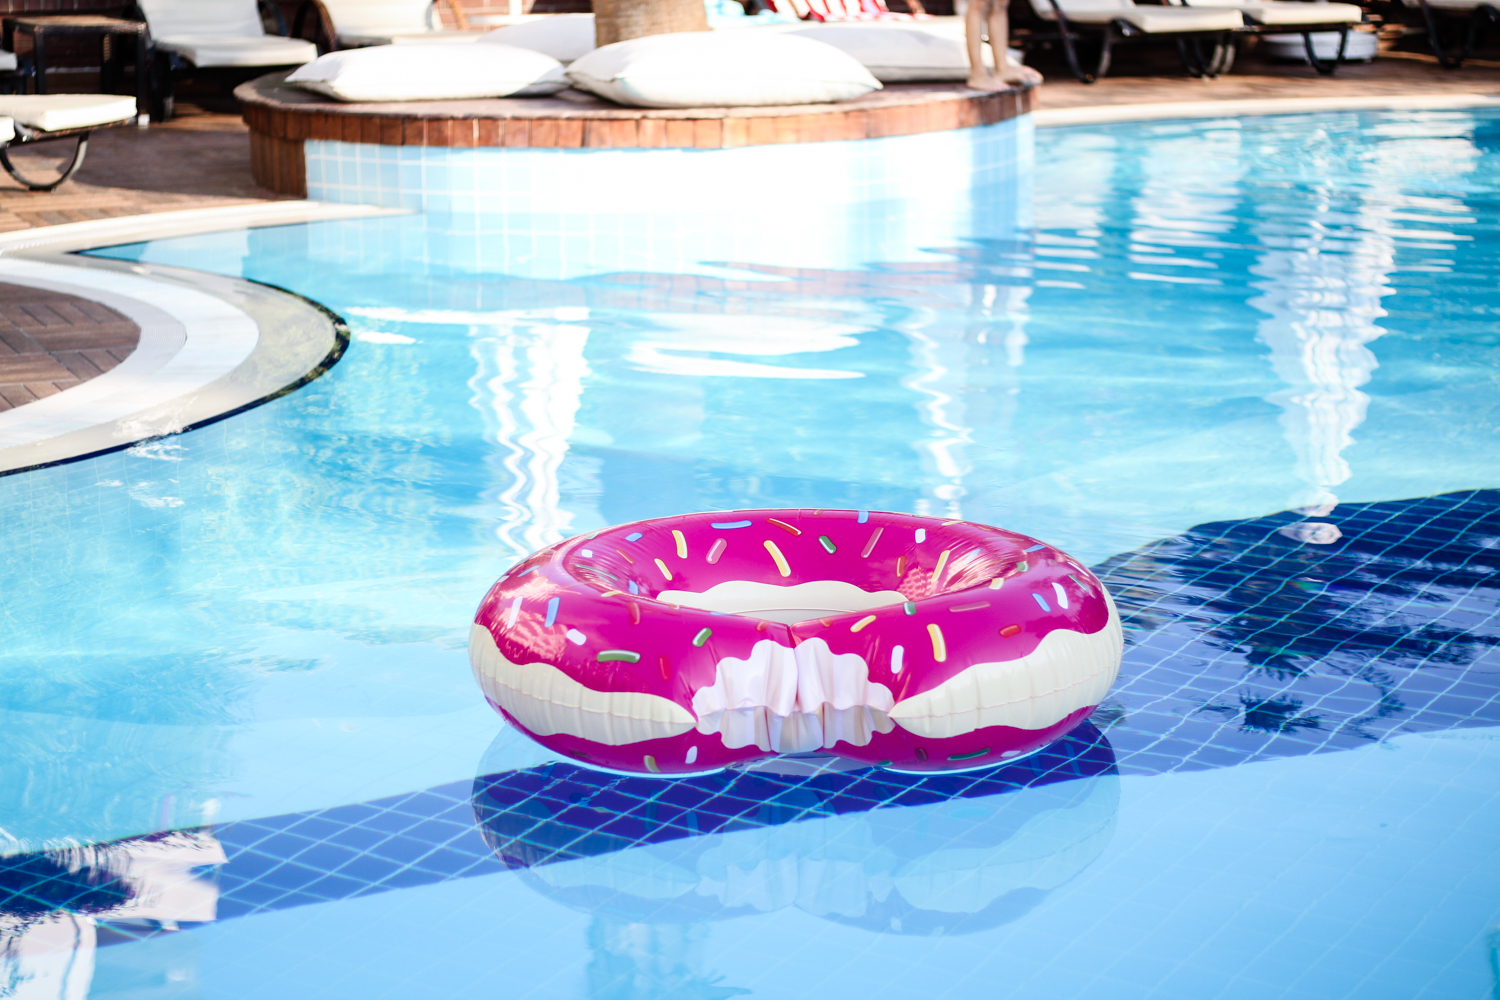 franziska-elea-deutsche-blogger-modeblog-fashionblog-muenchen-urlaub-2016-sommer-pool-strand-beach-donut-schwimmdonut-wasser-toy-pink-ferien